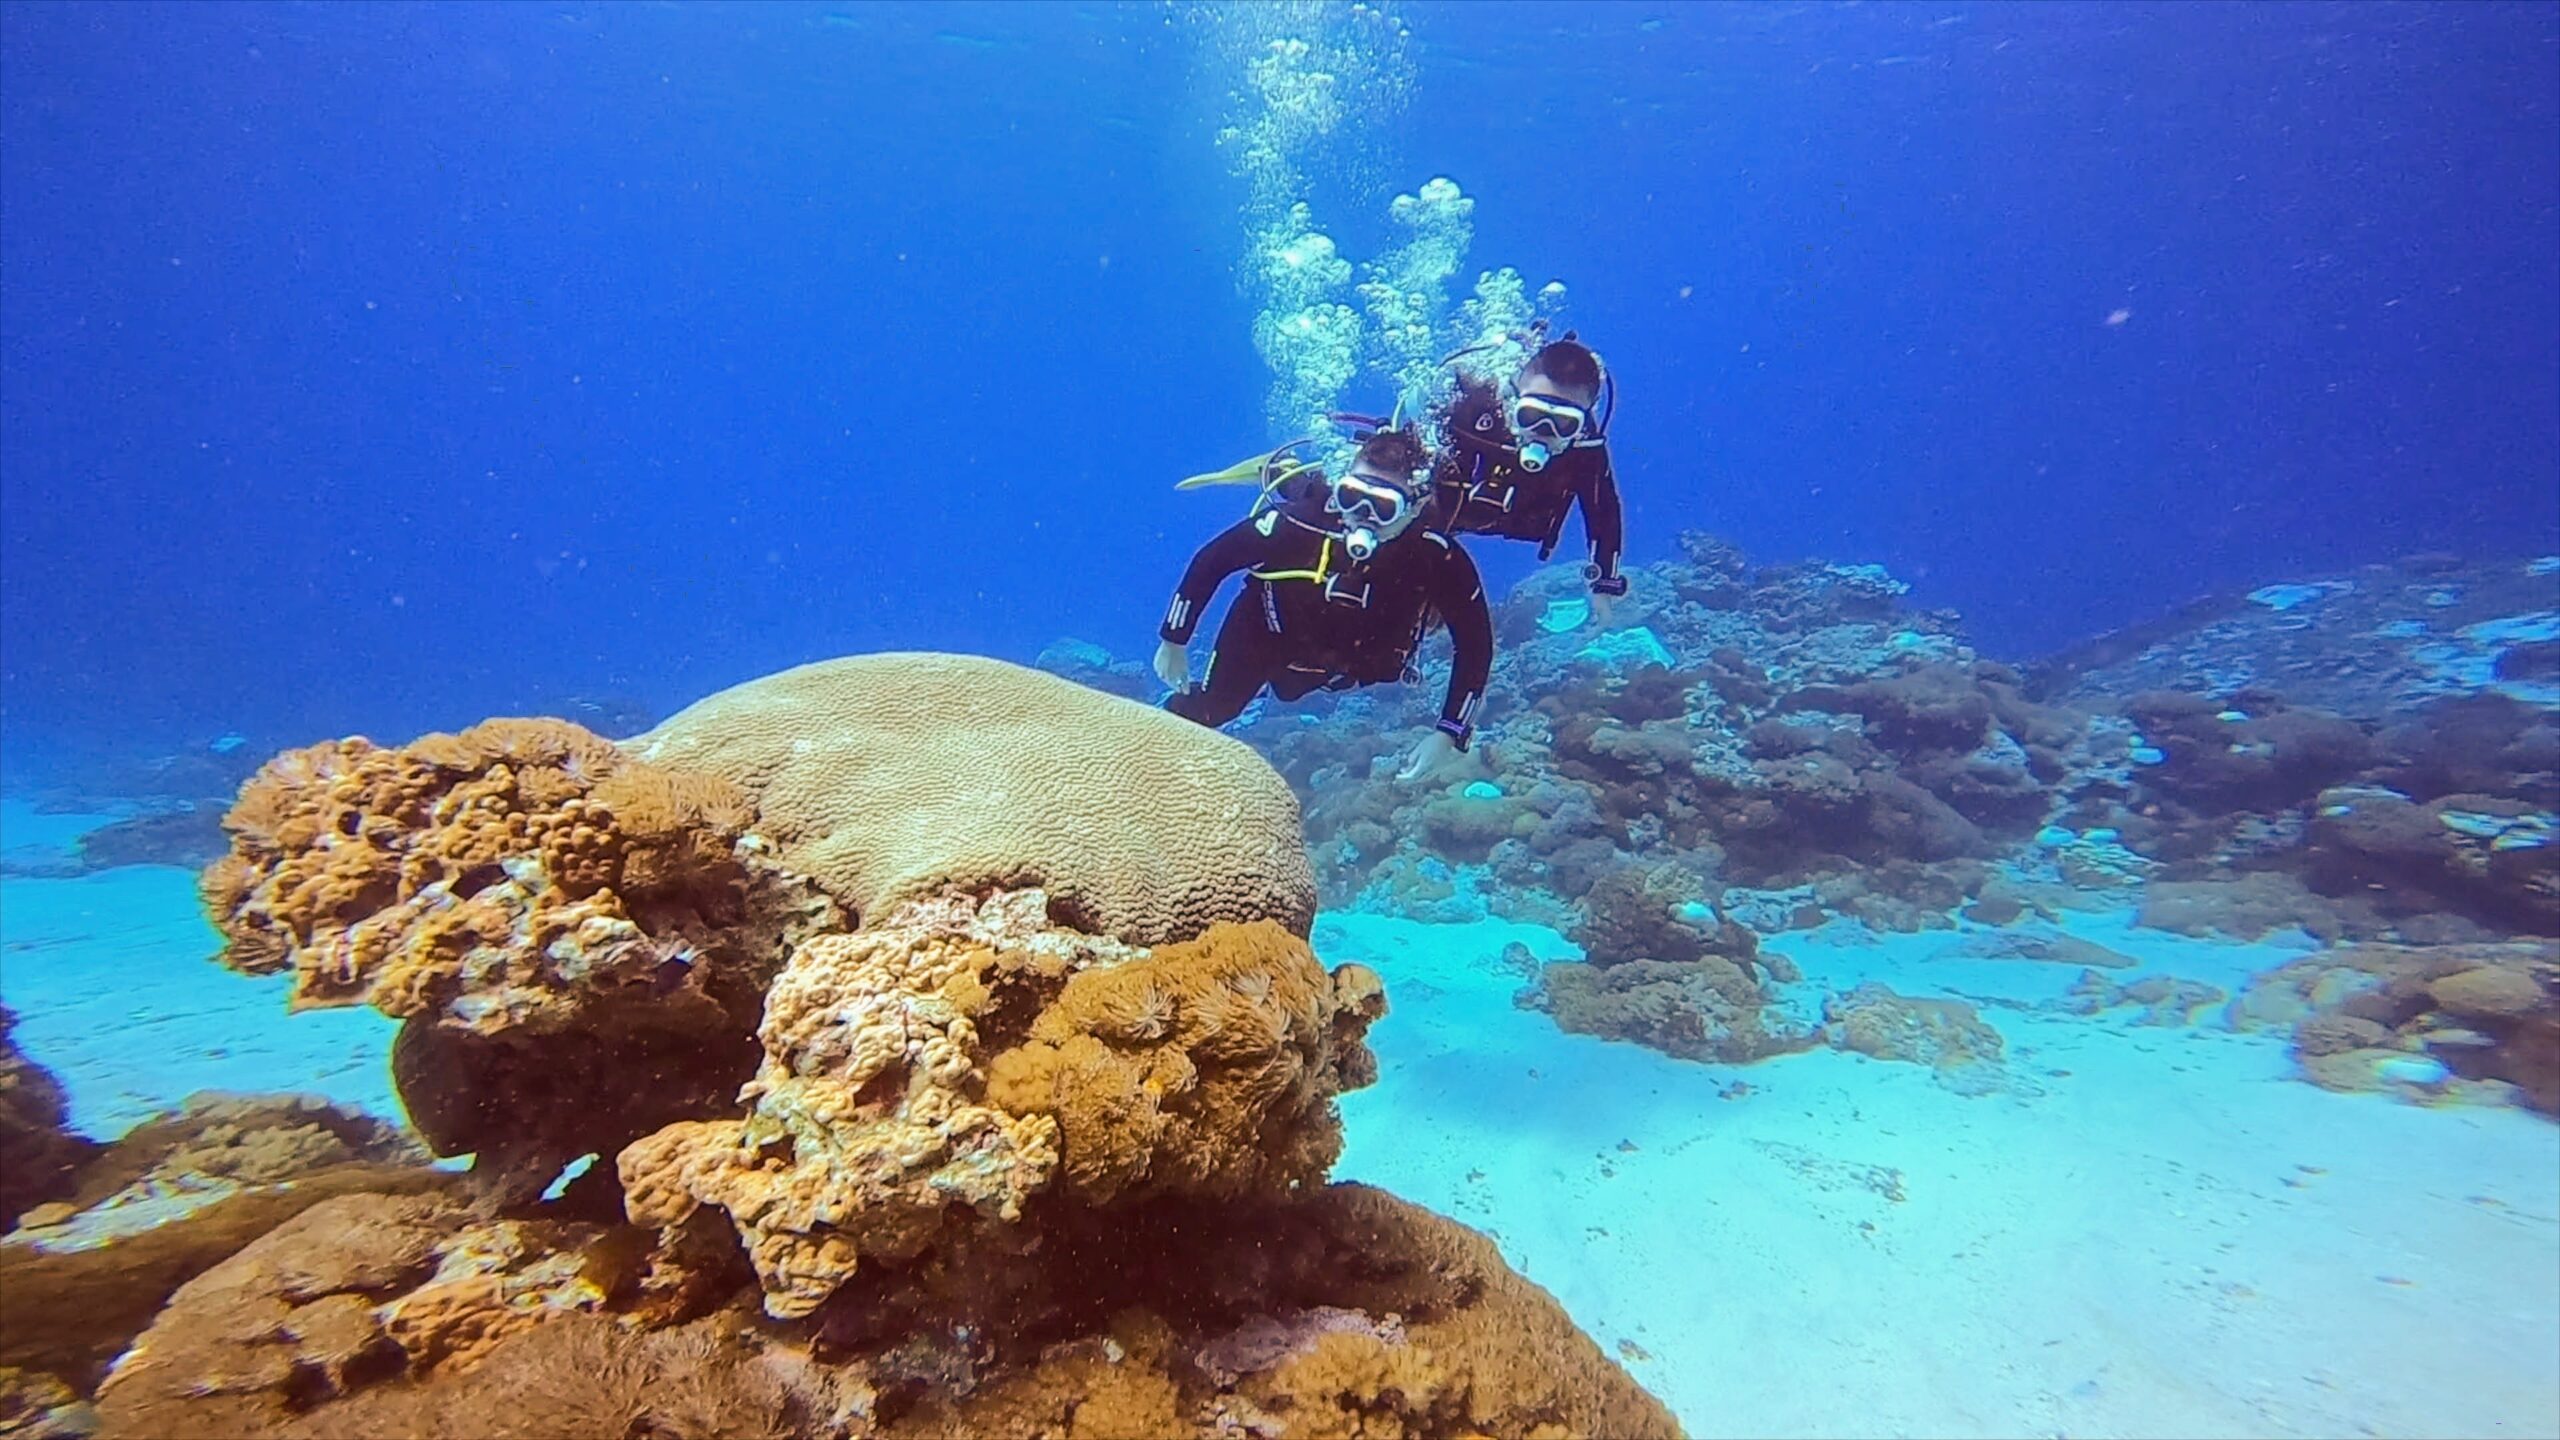 潛水之路的開端，讓我們一起成為潛水員吧 – 綠島